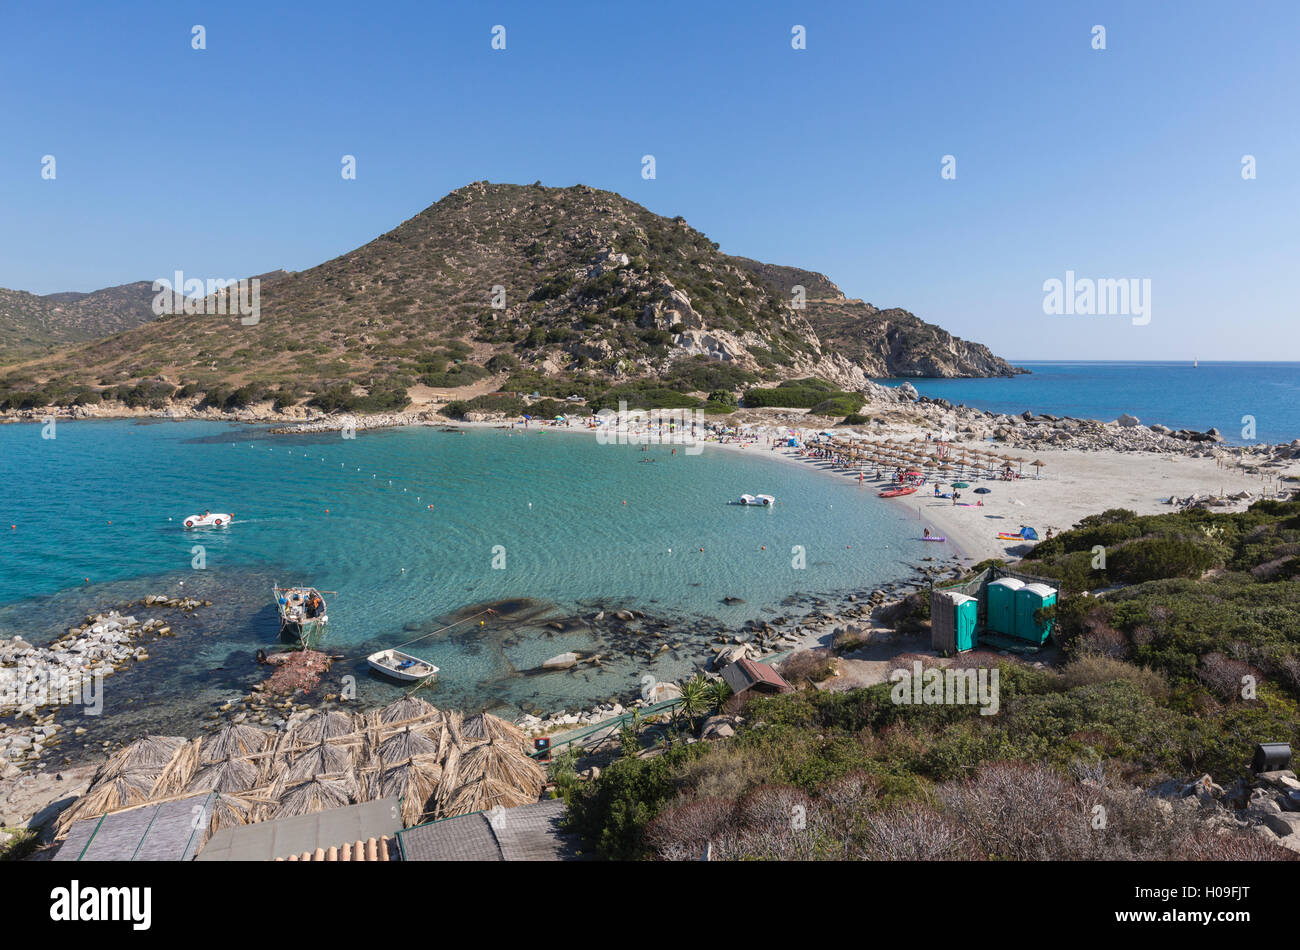 Vista superior de la bahía con el mar turquesa y la arena de la playa, Punta Molentis, Villasimius, Cagliari, Cerdeña, Italia Foto de stock